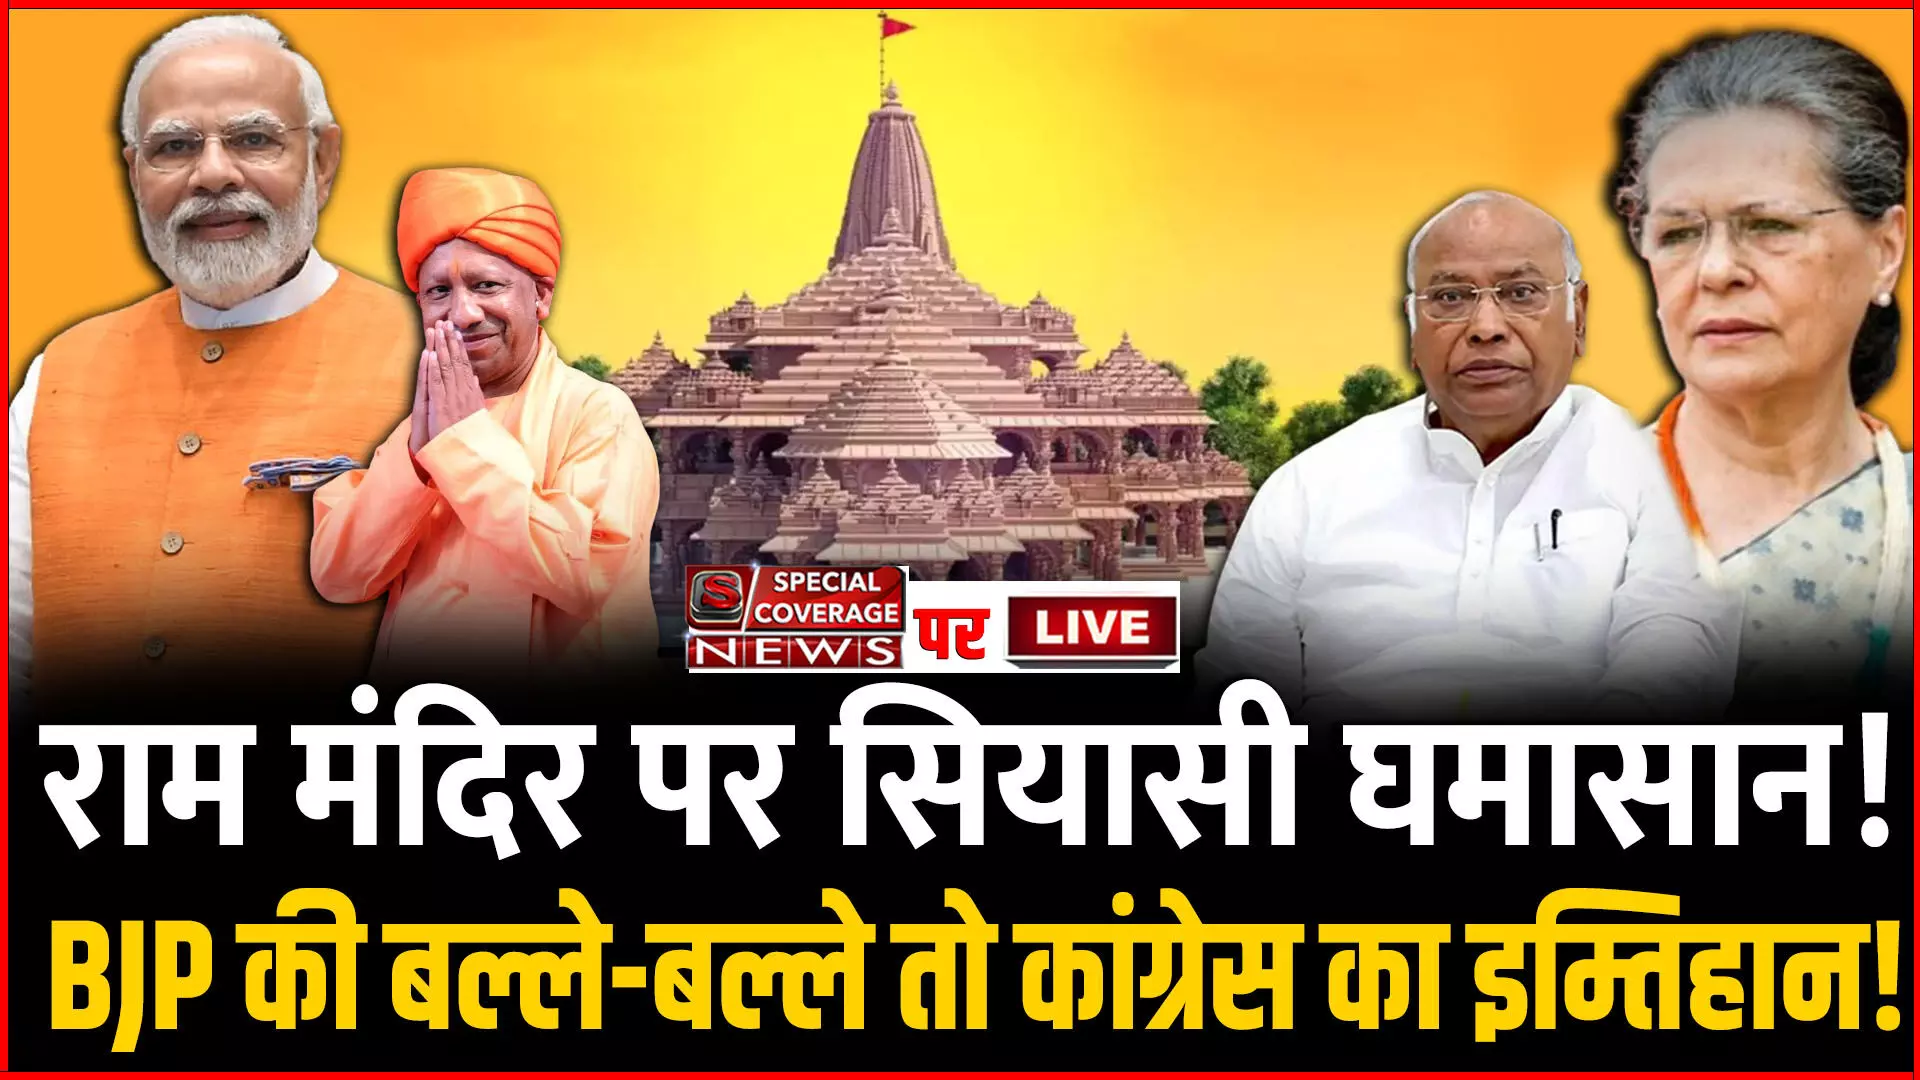 Ram Mandir in Ayodhya : राम मंदिर पर सियासी घमासान! बीजेपी की बल्ले-बल्ले तो कांग्रेस का इम्तिहान!